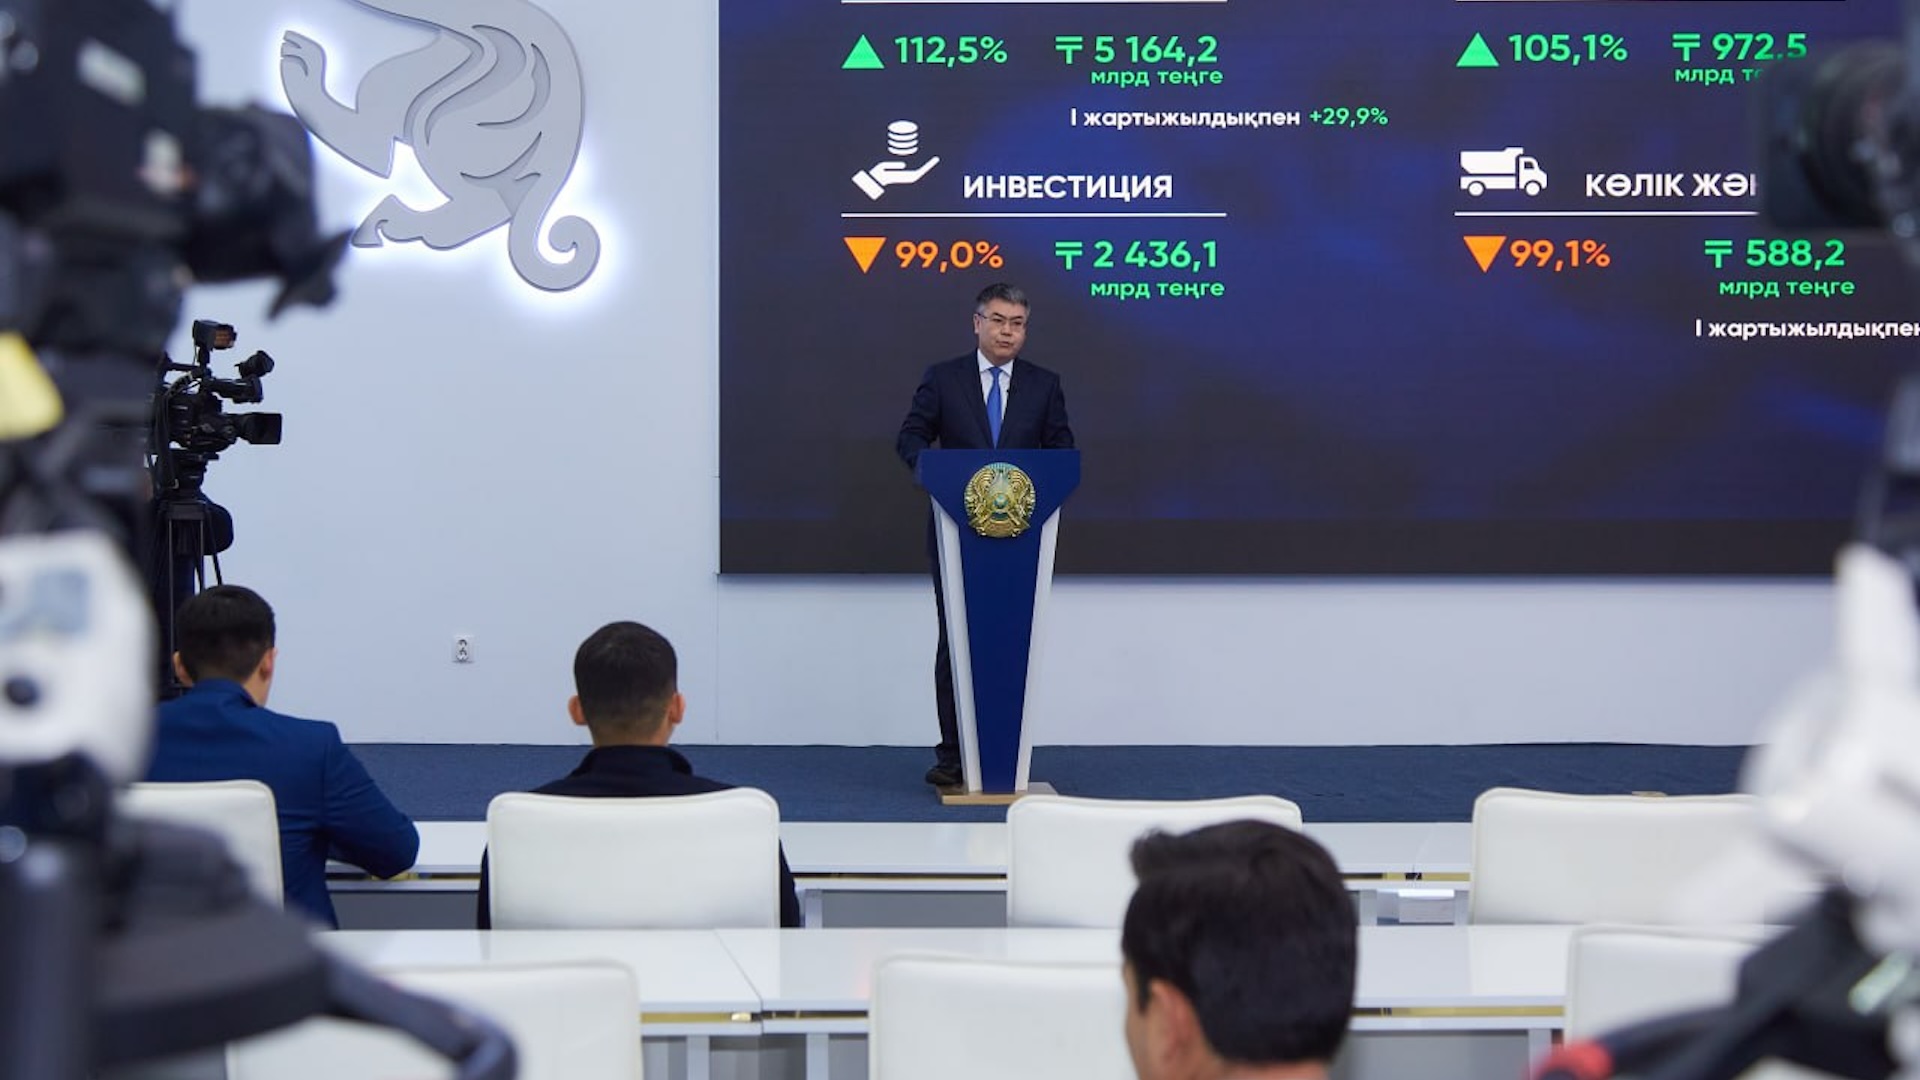 24% от общего объема промышленности республики приходится на Атыраускую область - аким региона